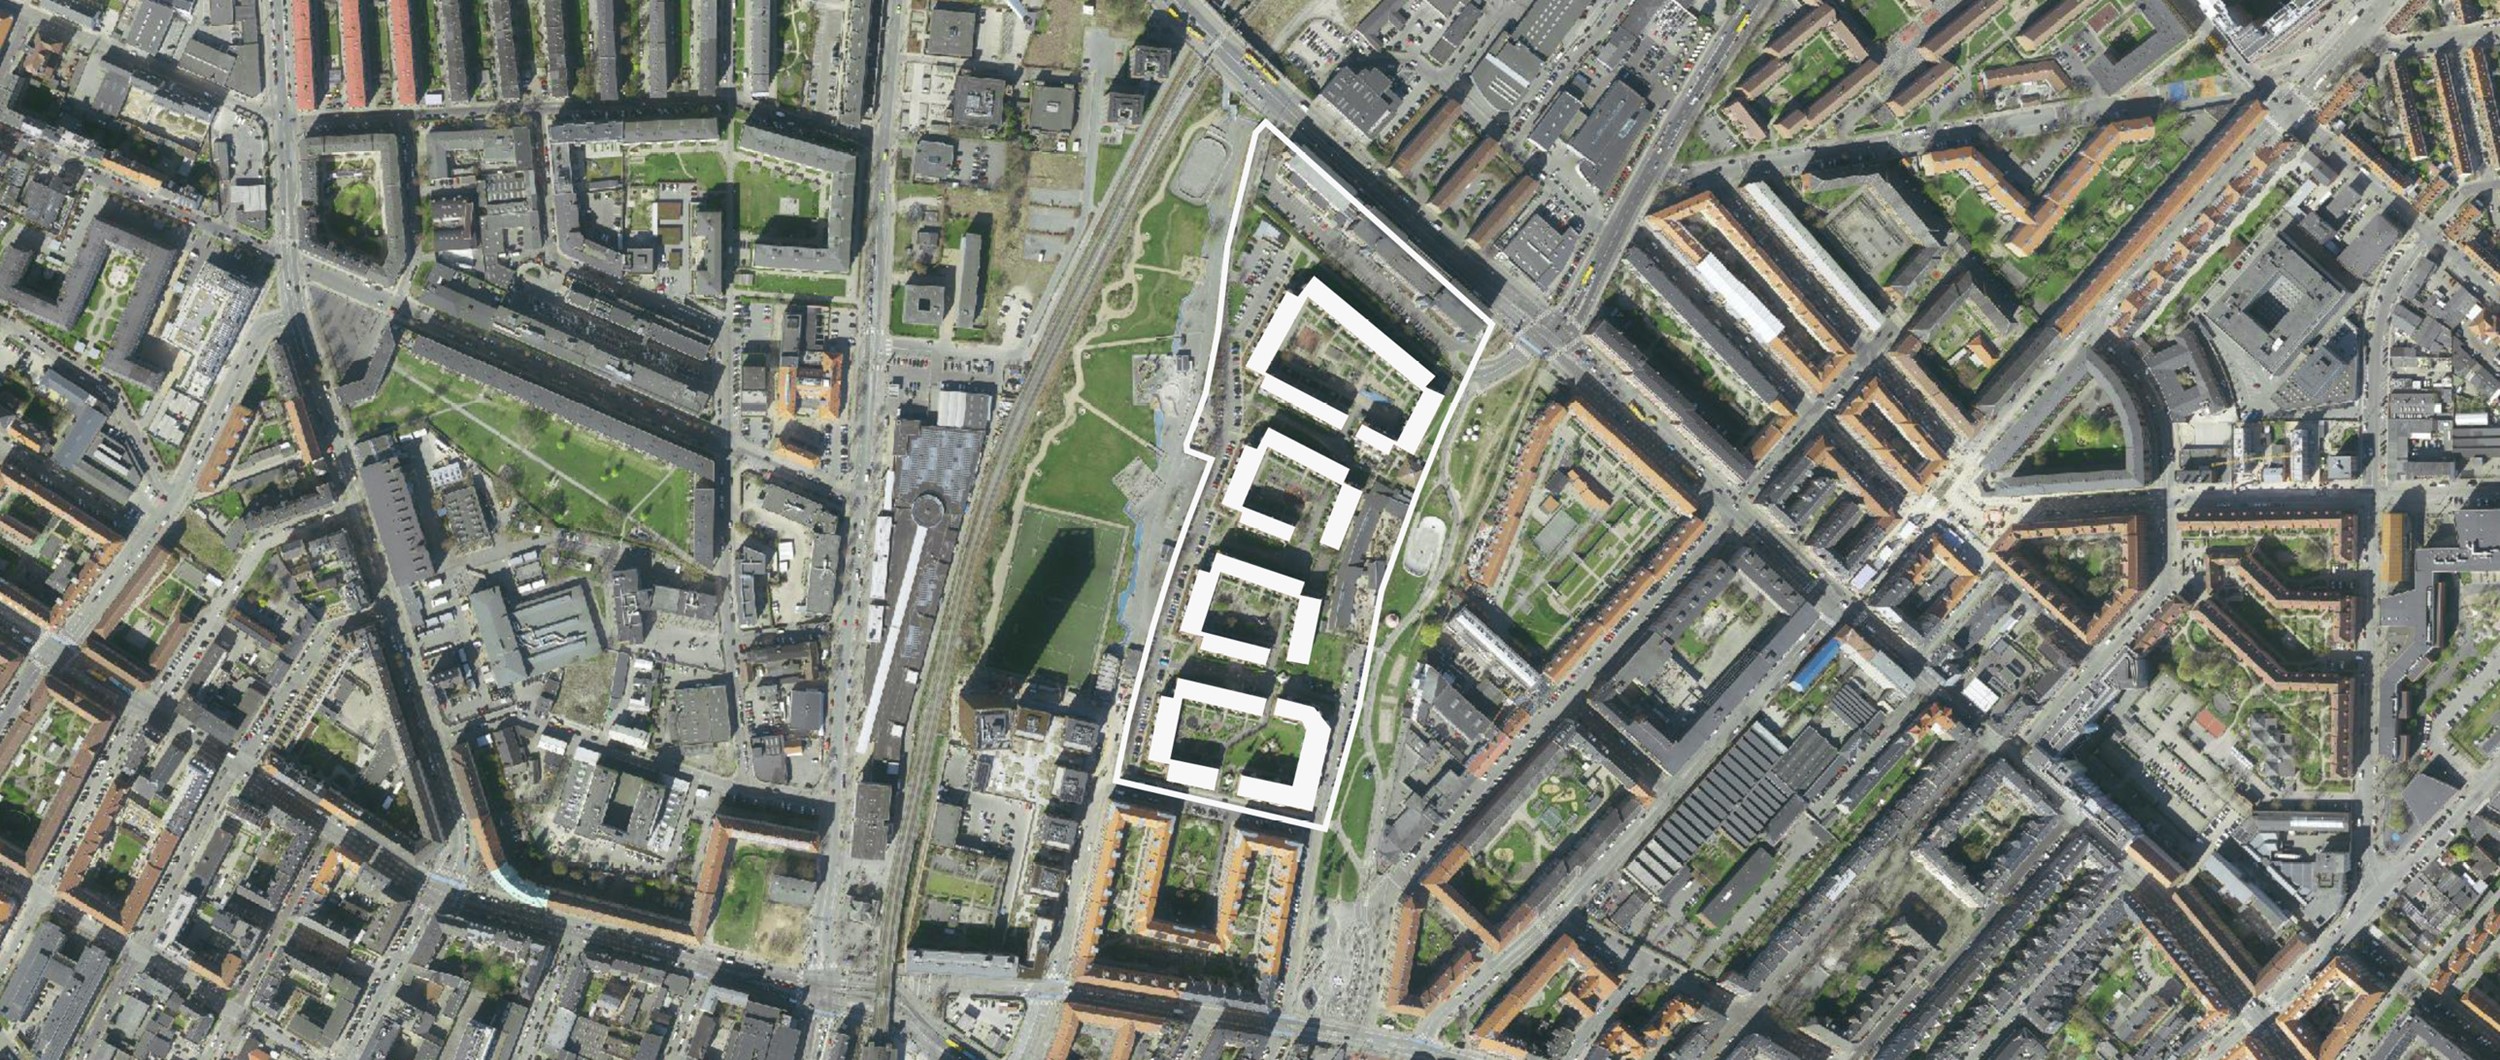 Byudvikling på Ydre Nørrebro giver Mjølnerparken en særdeles attraktiv beliggenhed mellem to nye parker og med Metro og S-tog lige ved døren.